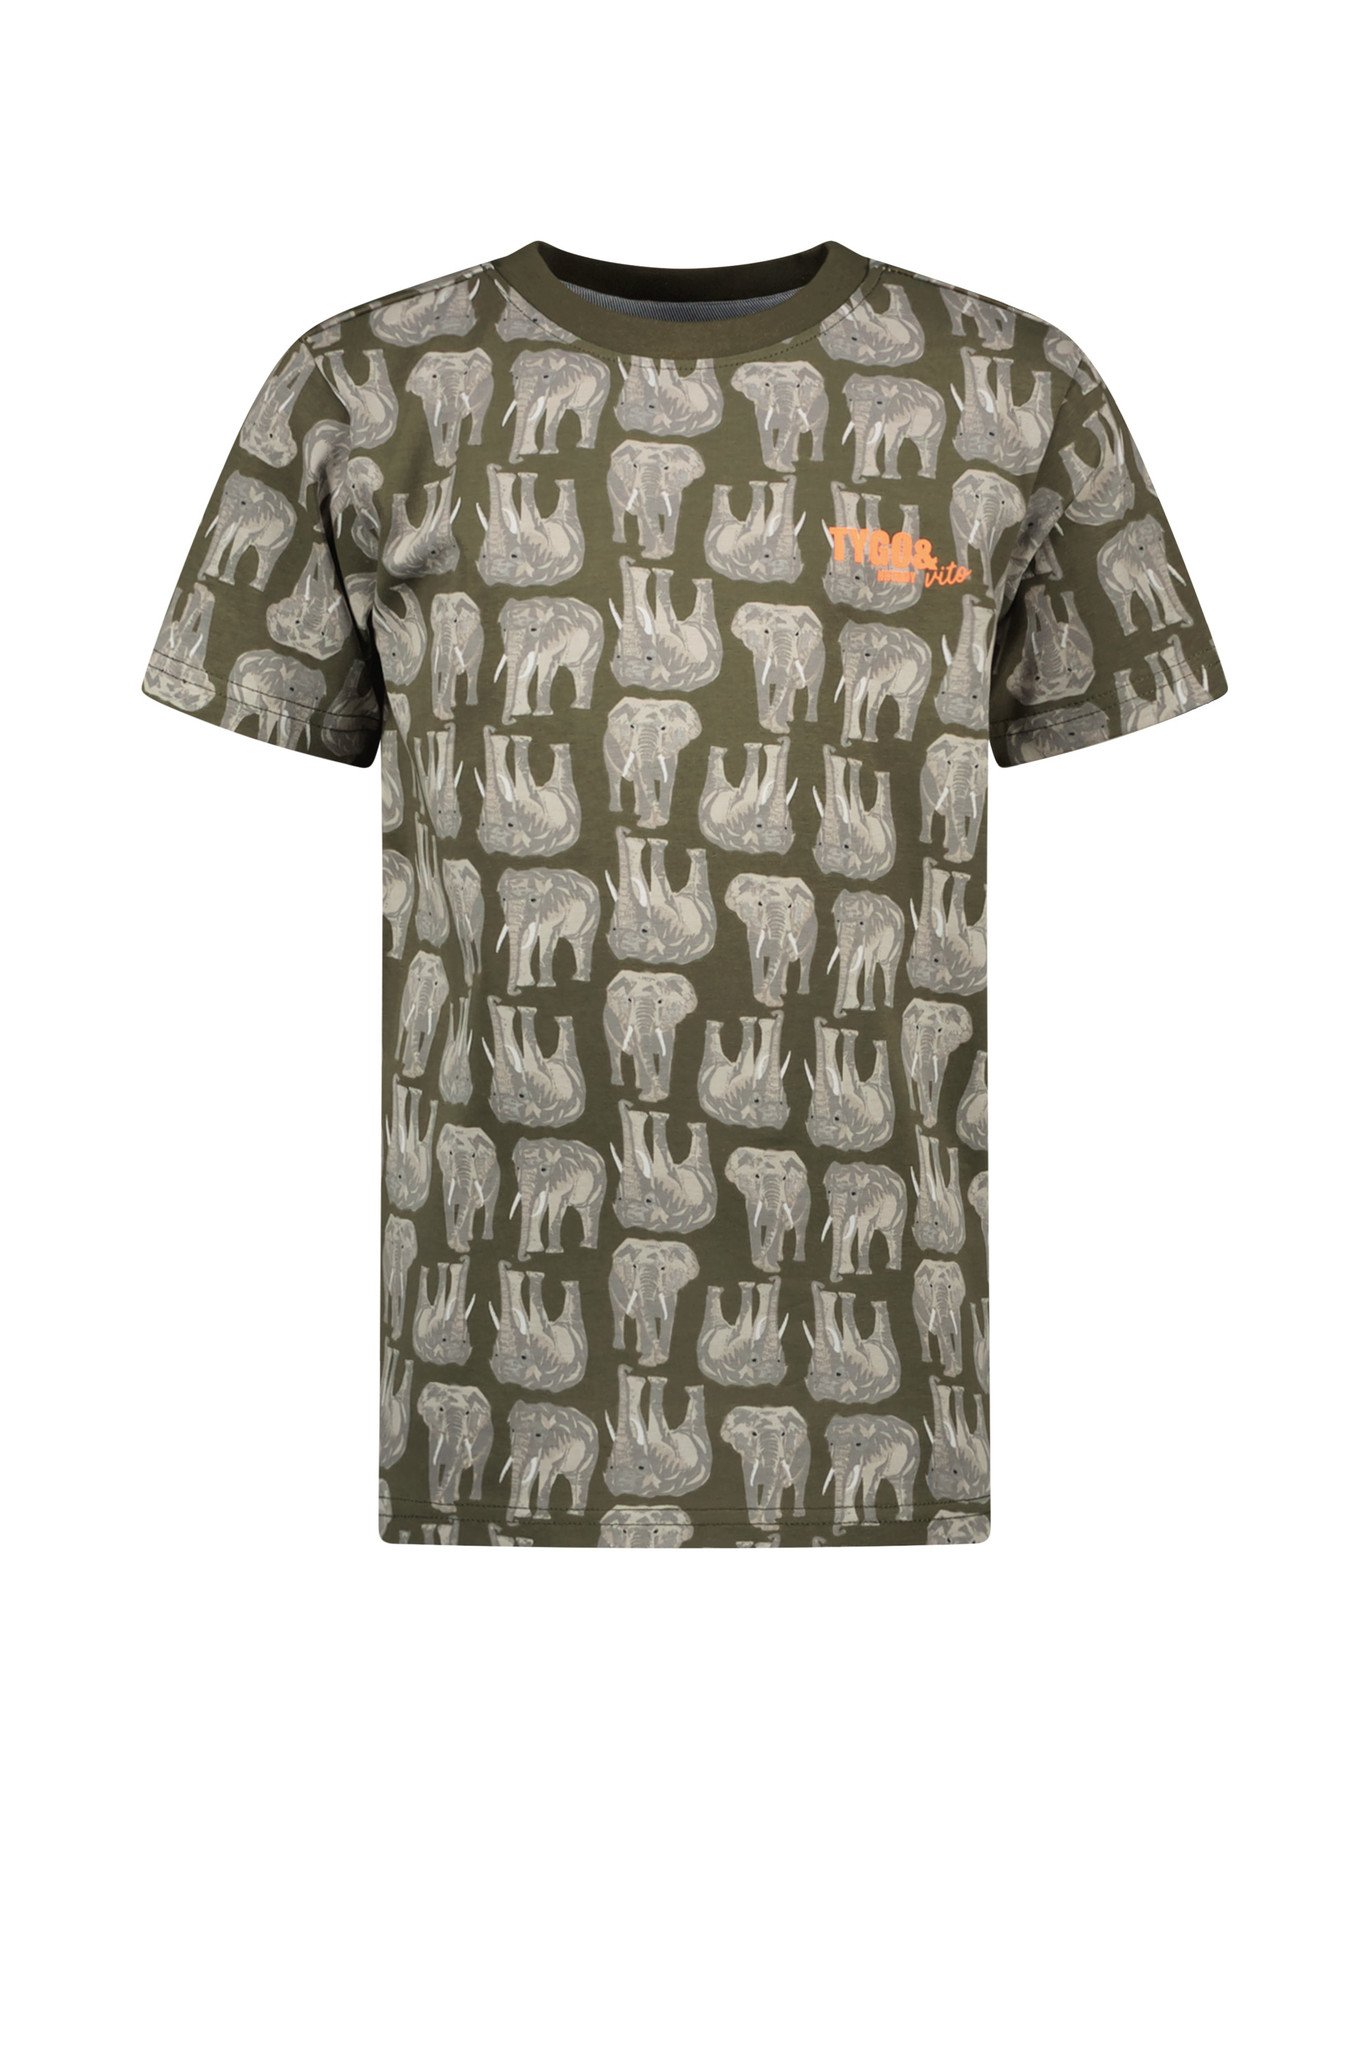 Tygo & Vito Jongens t-shirt AOP olifant - Army